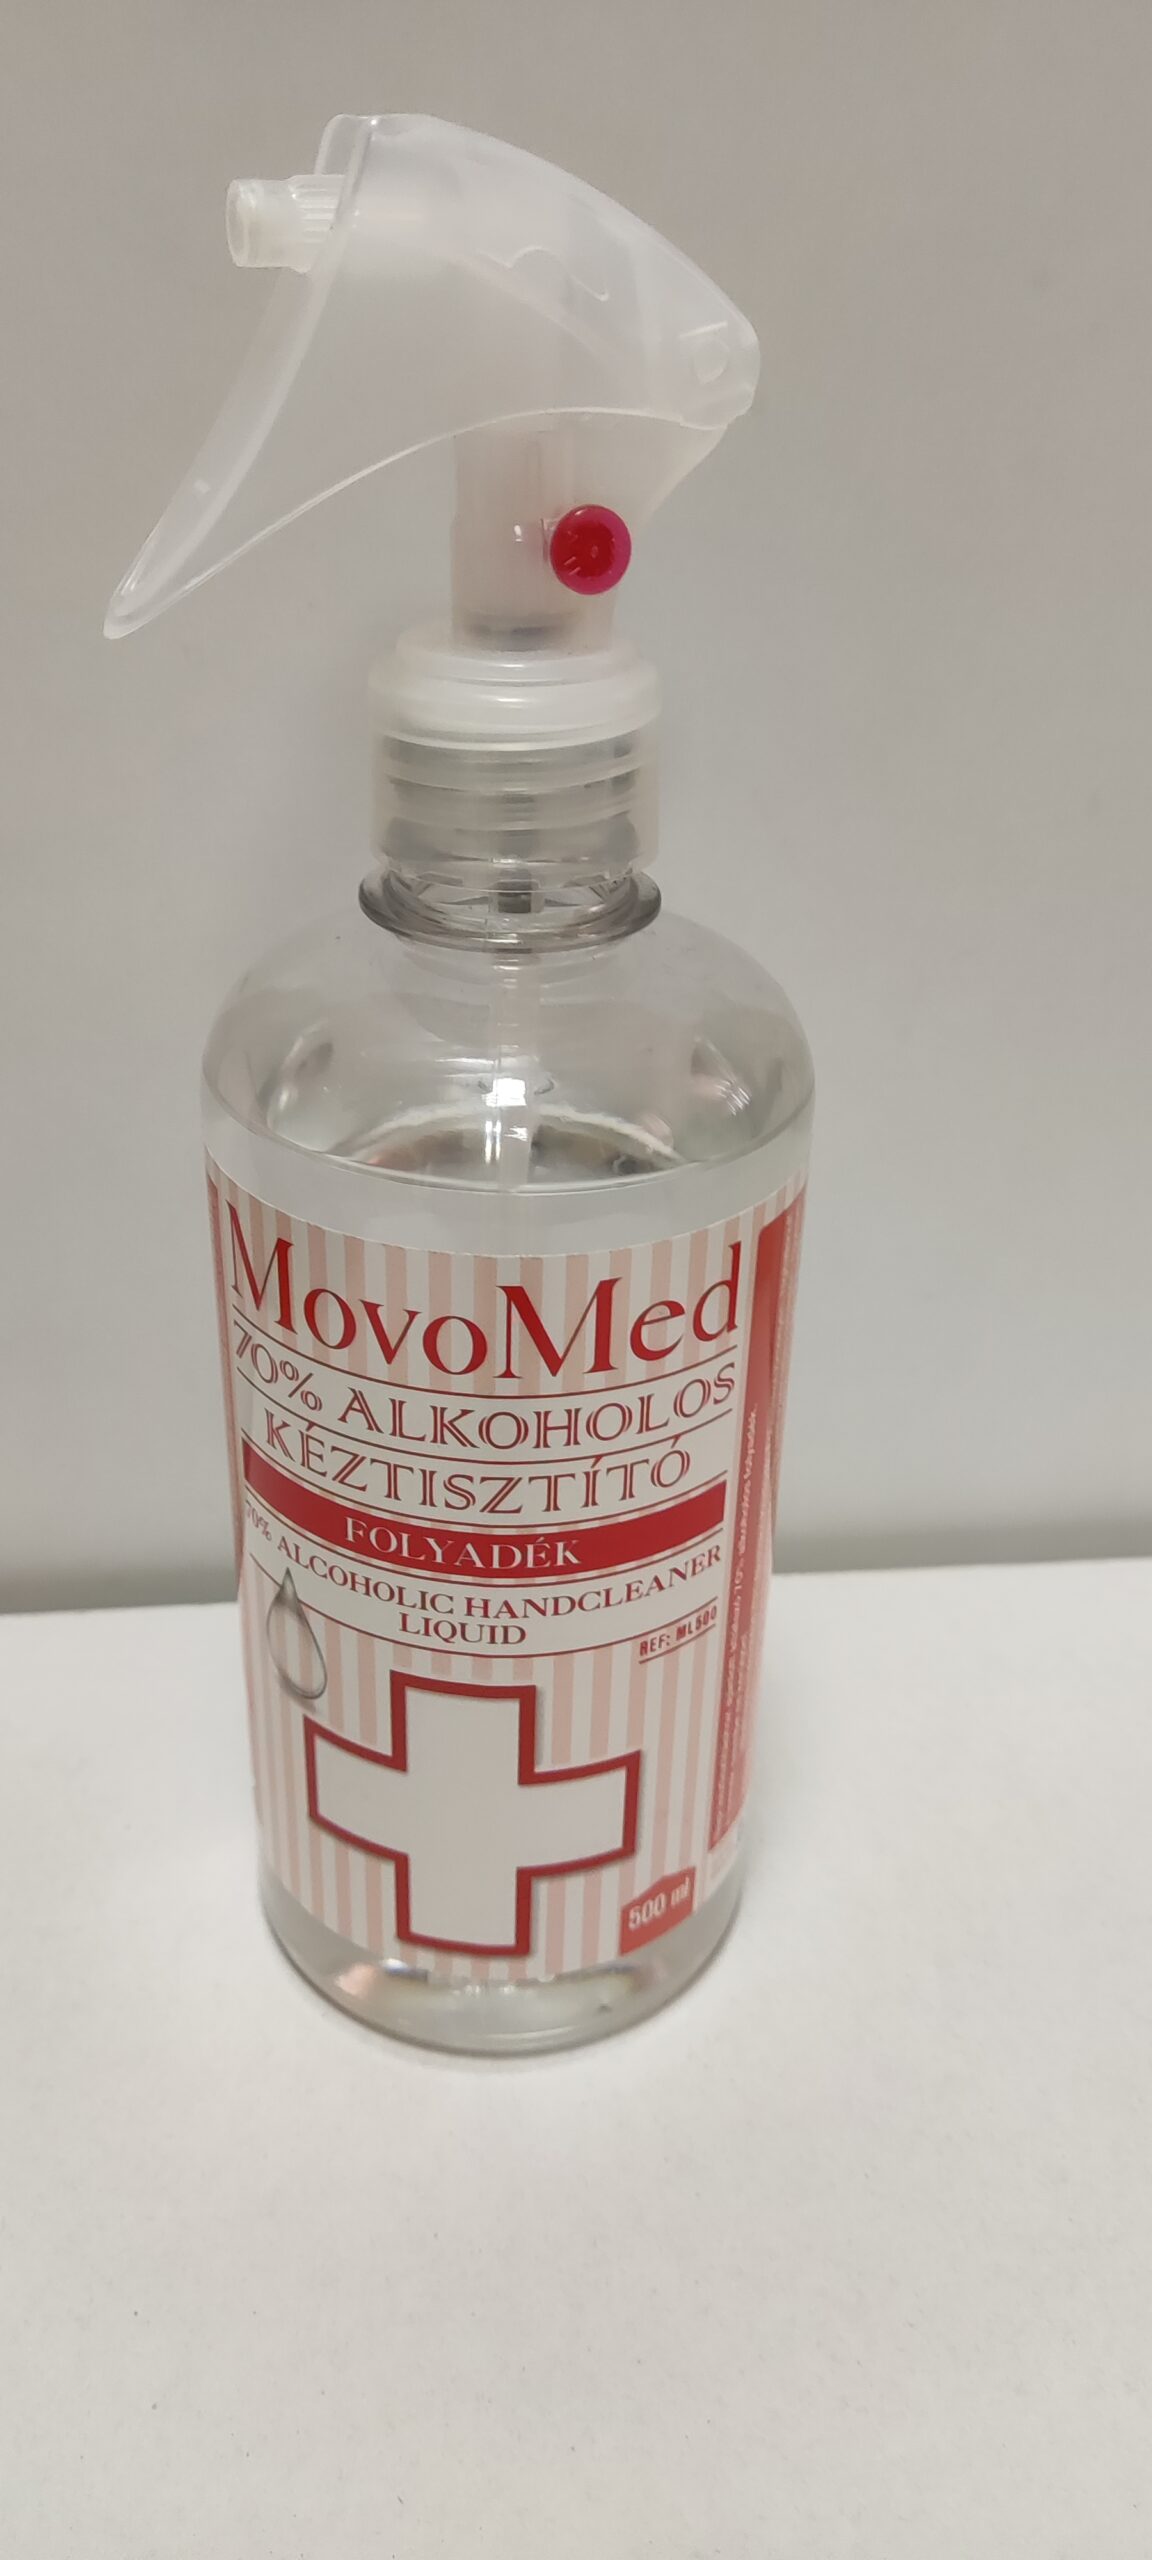 MovoMed 70% alkoholos kéztisztító folyadék